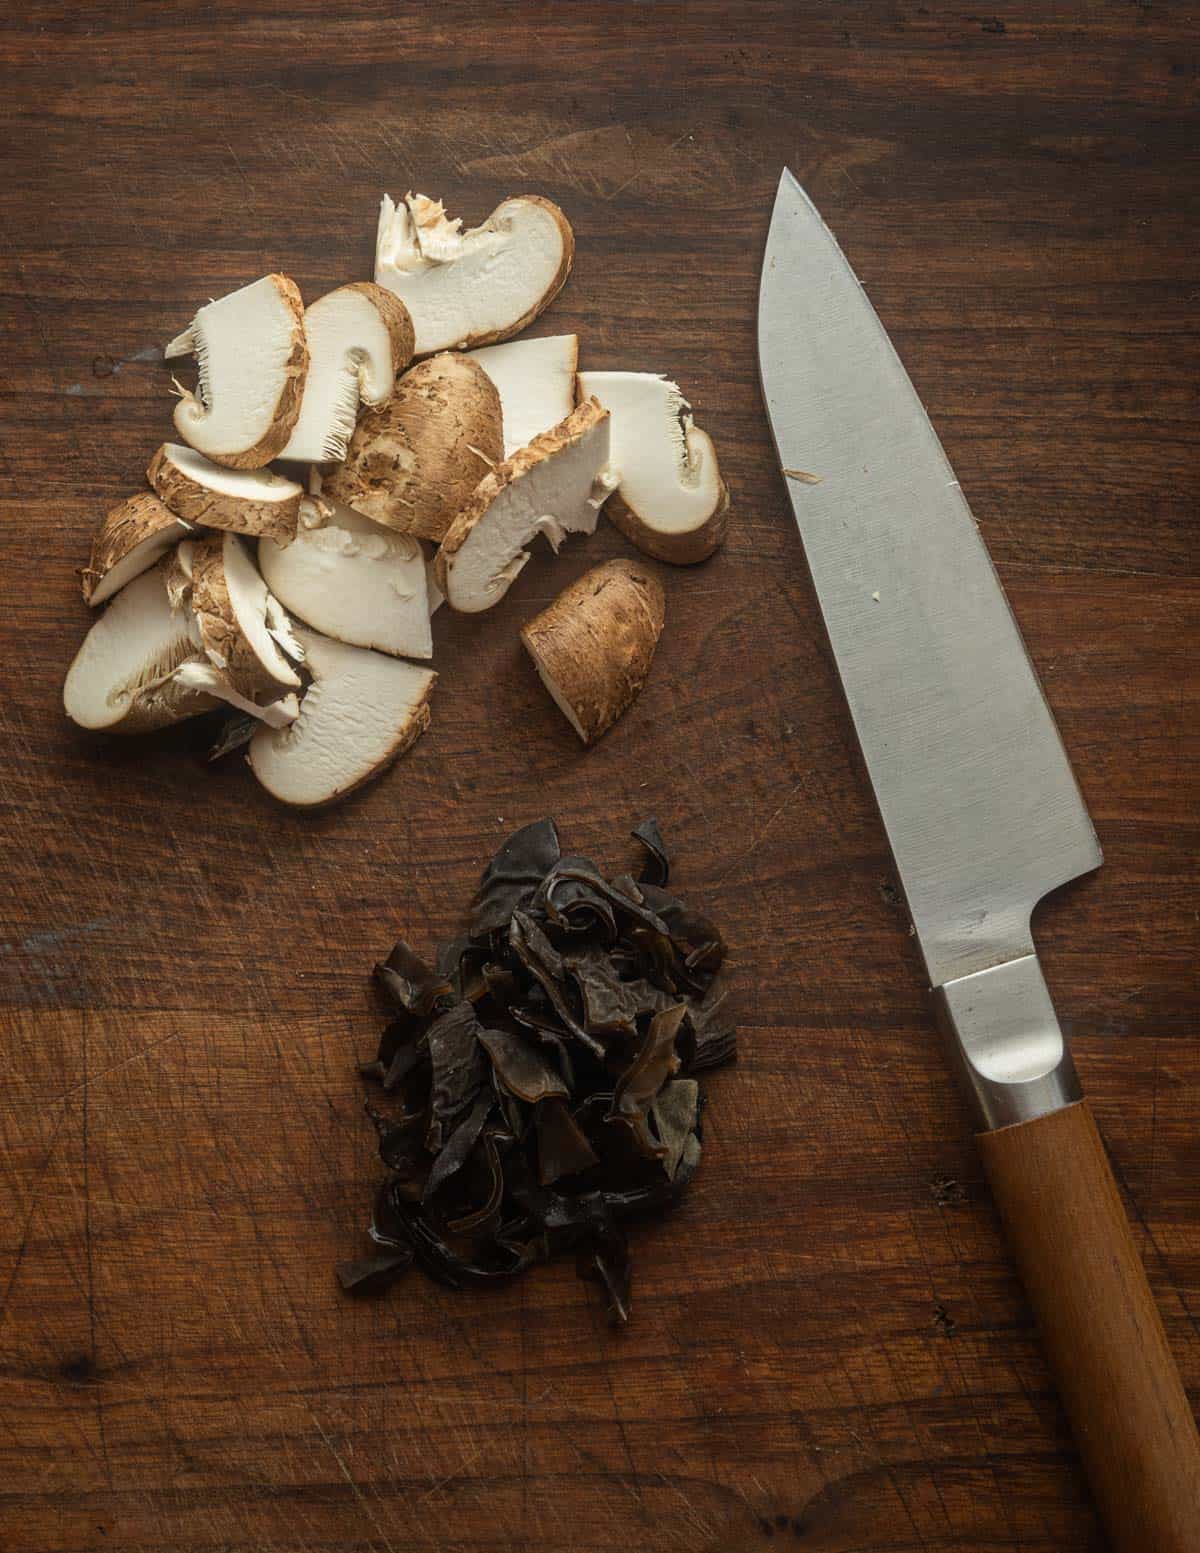 Sliced wood ear and shiitake mushrooms on a cutting board.